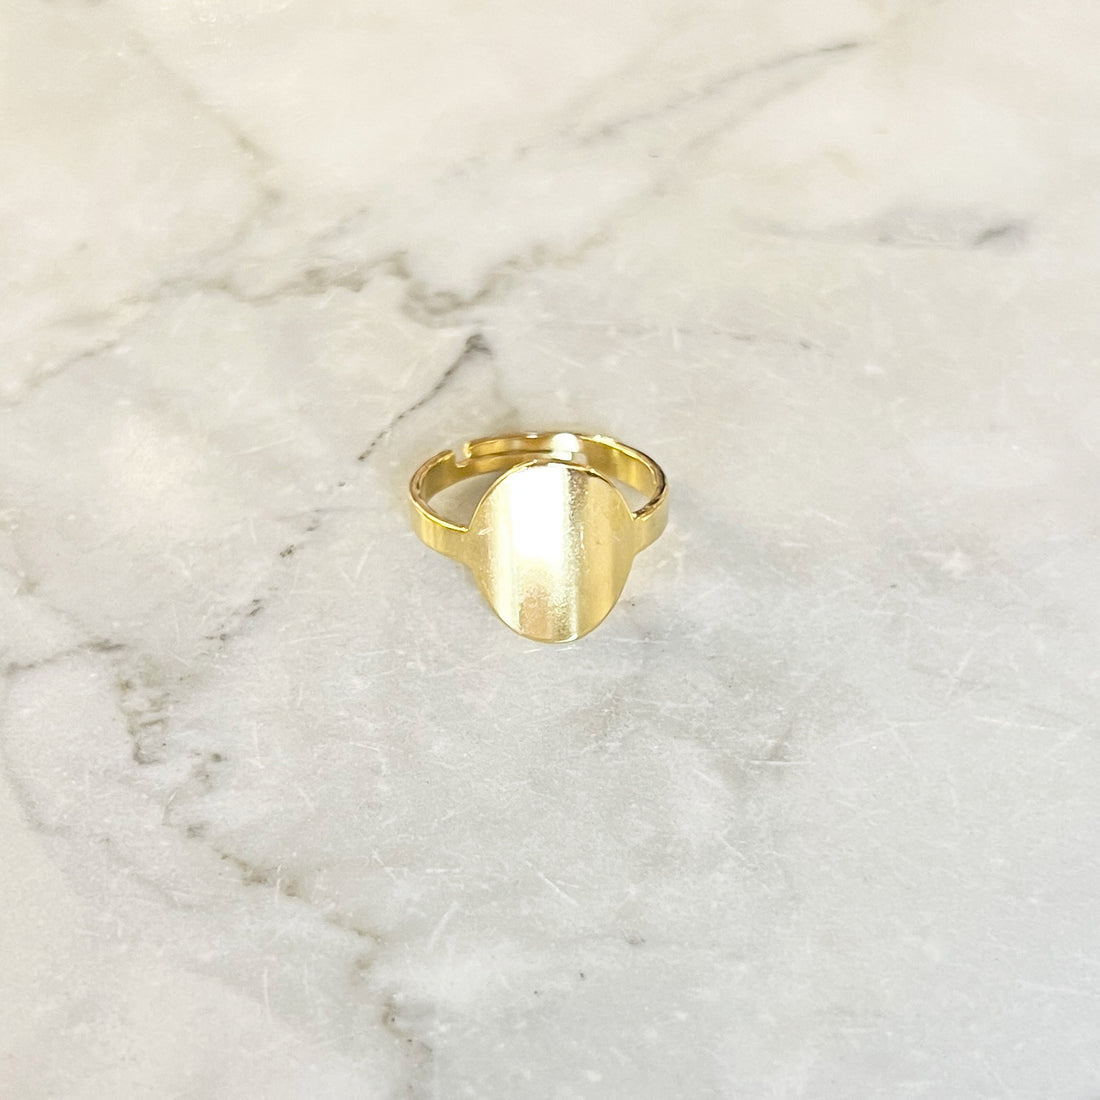 Gouden ring met een grote cirkel. De ring is van roestvrij staal met een gold plated laagje en is waterproof. De ring is one-size en verstelbaar. Ronde signet ring goud. 